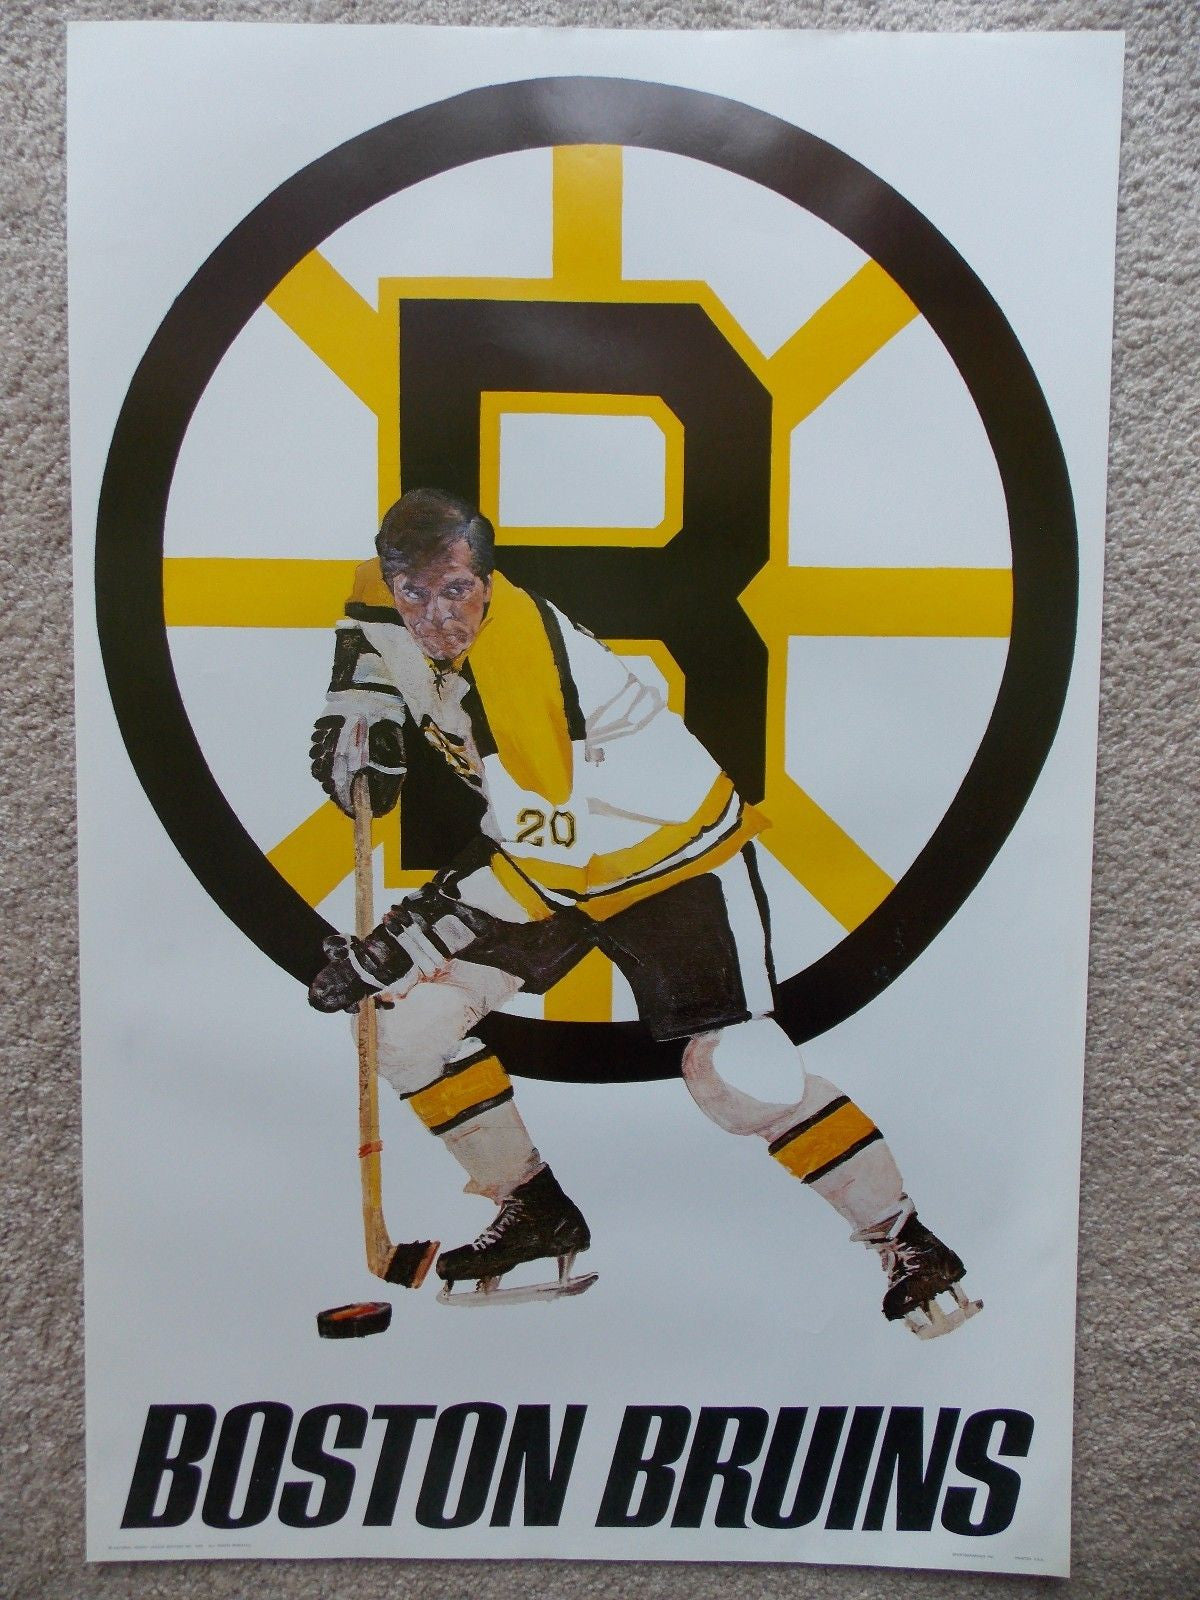 Boston Bruins  Boston bruins, Nhl boston bruins, Bruins hockey